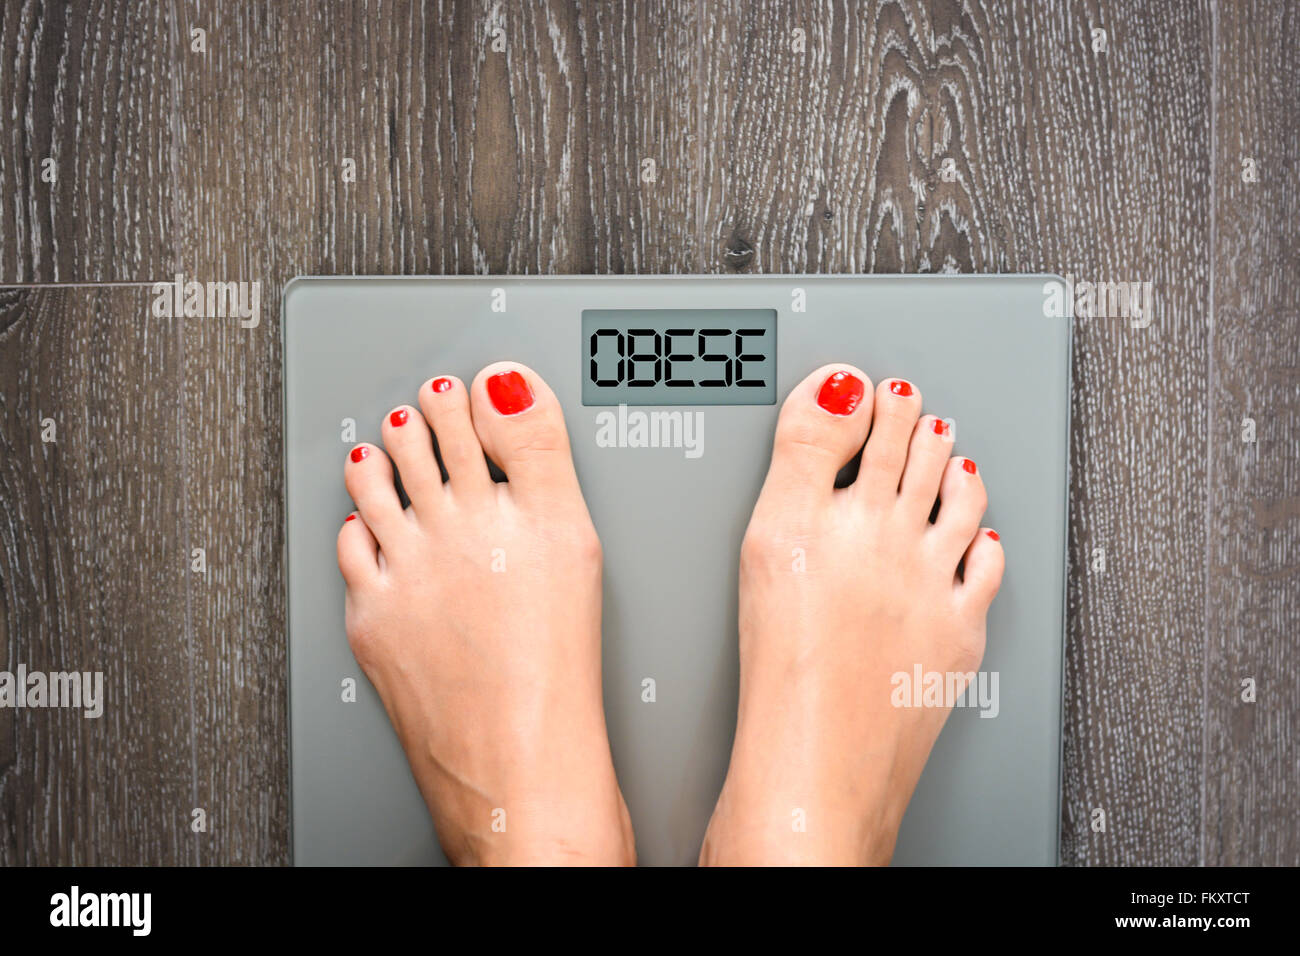 Perdre du poids ou suivre un régime concept avec personne sur une échelle mesurant le kilogrammes Banque D'Images